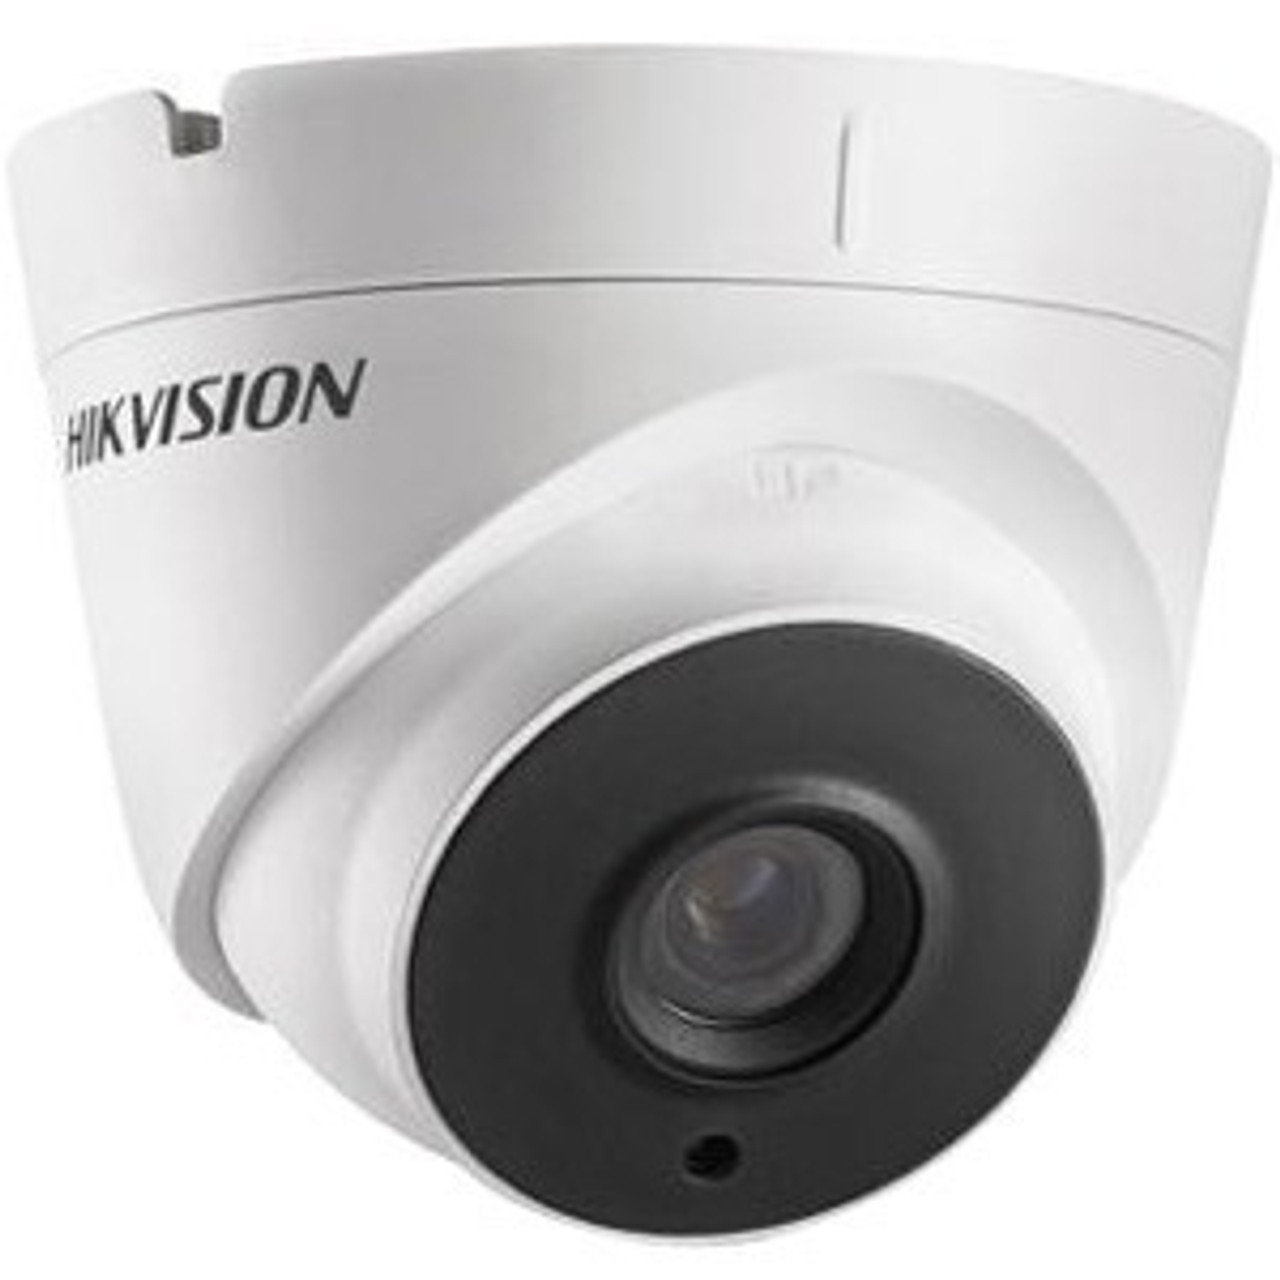 Hikvision DS-2CE56H0T-IT1F 3.6MM